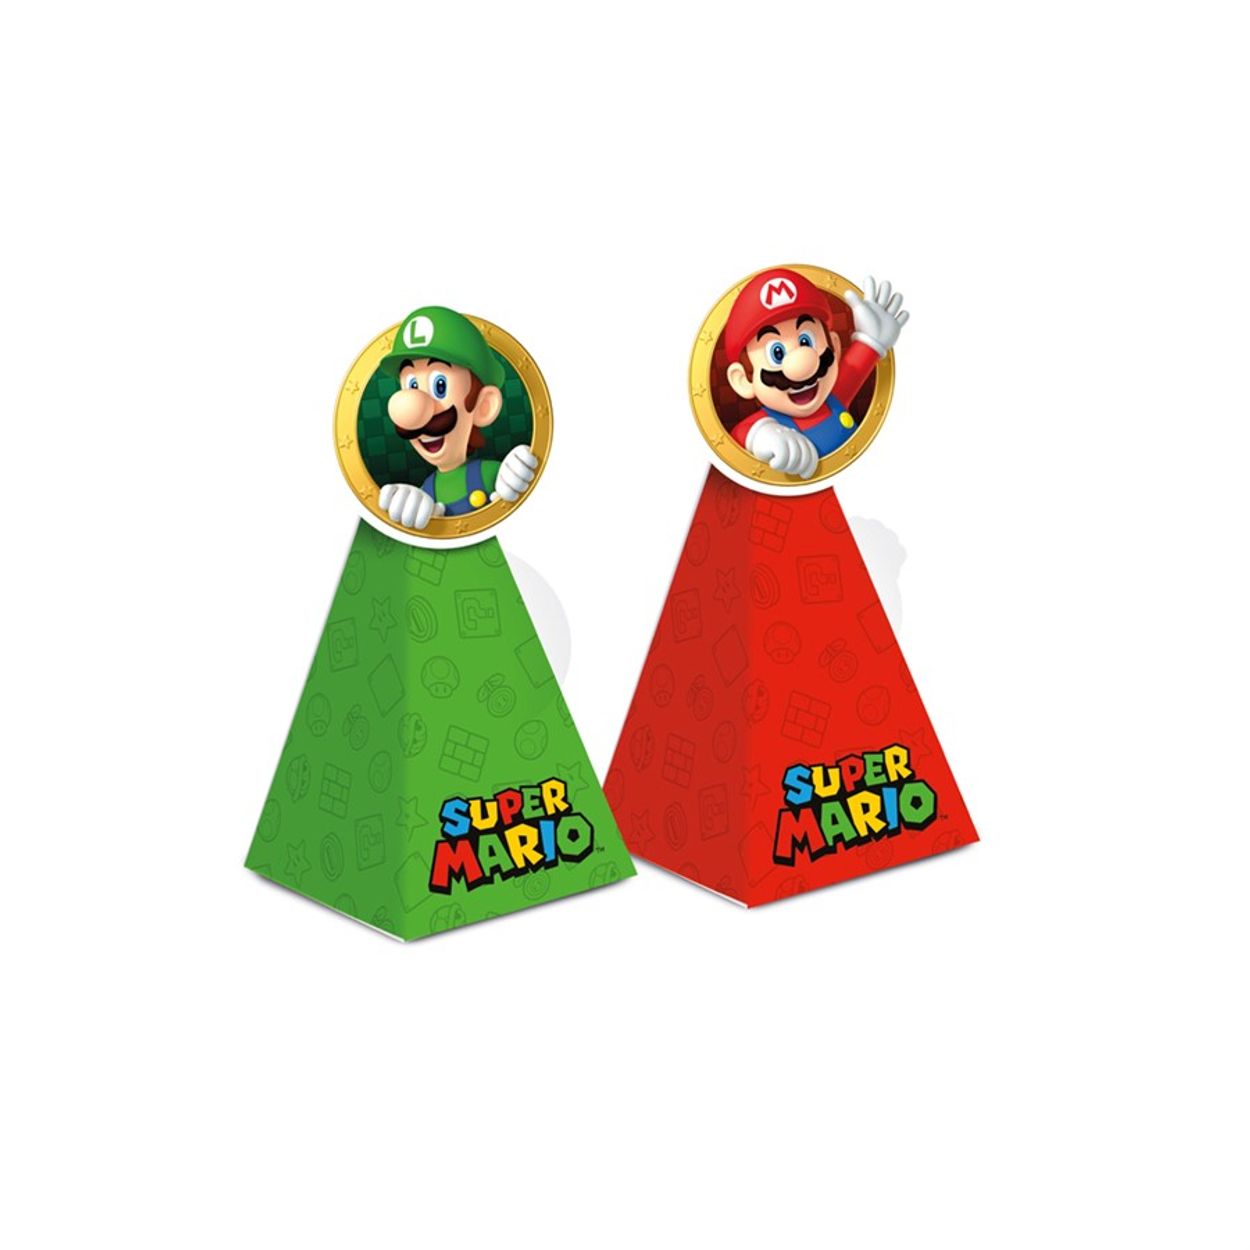 Colecão kit mini bonecos Super Mario Bros em Promoção na Americanas